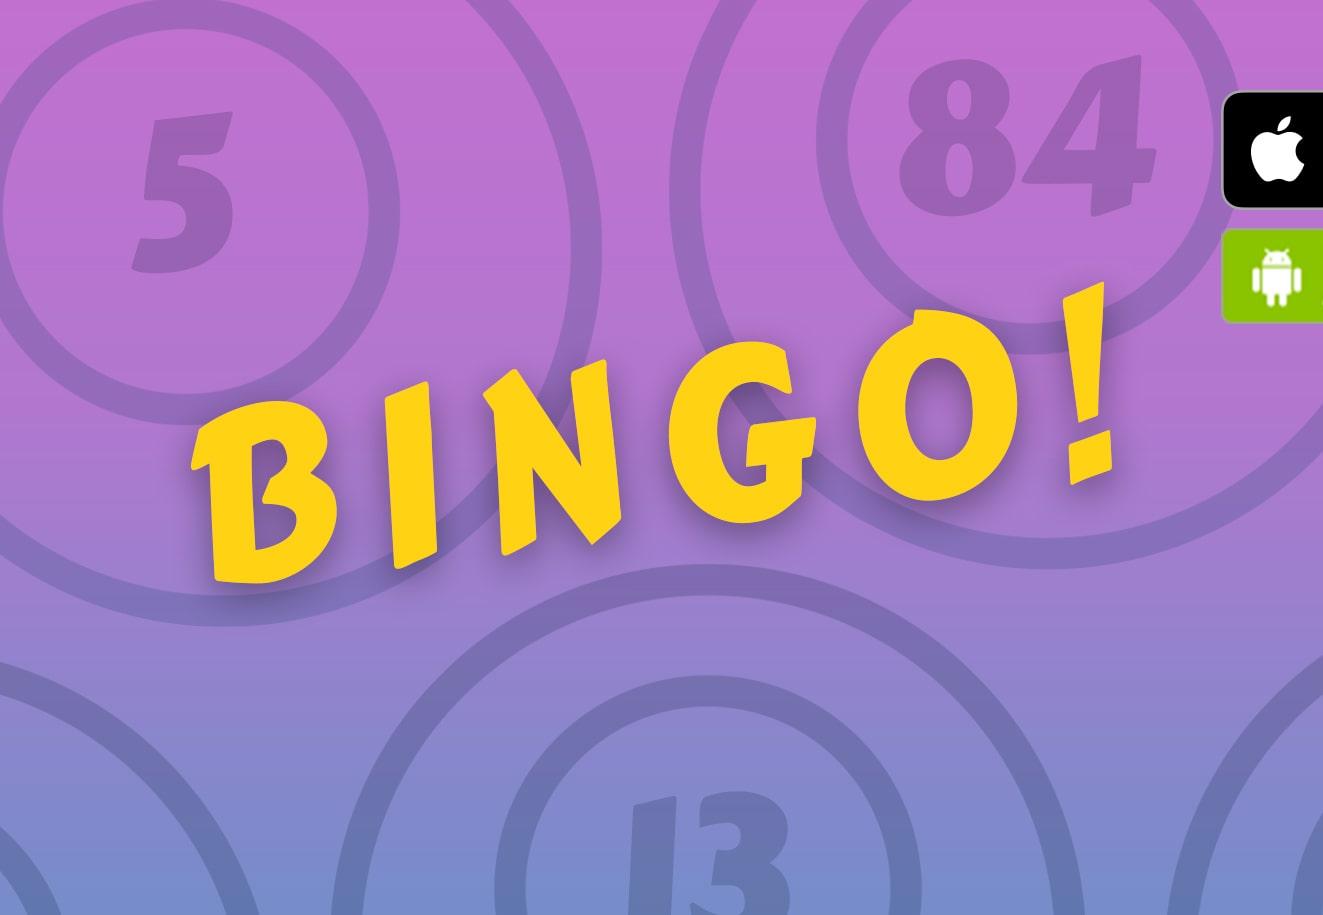 eurobet bingo